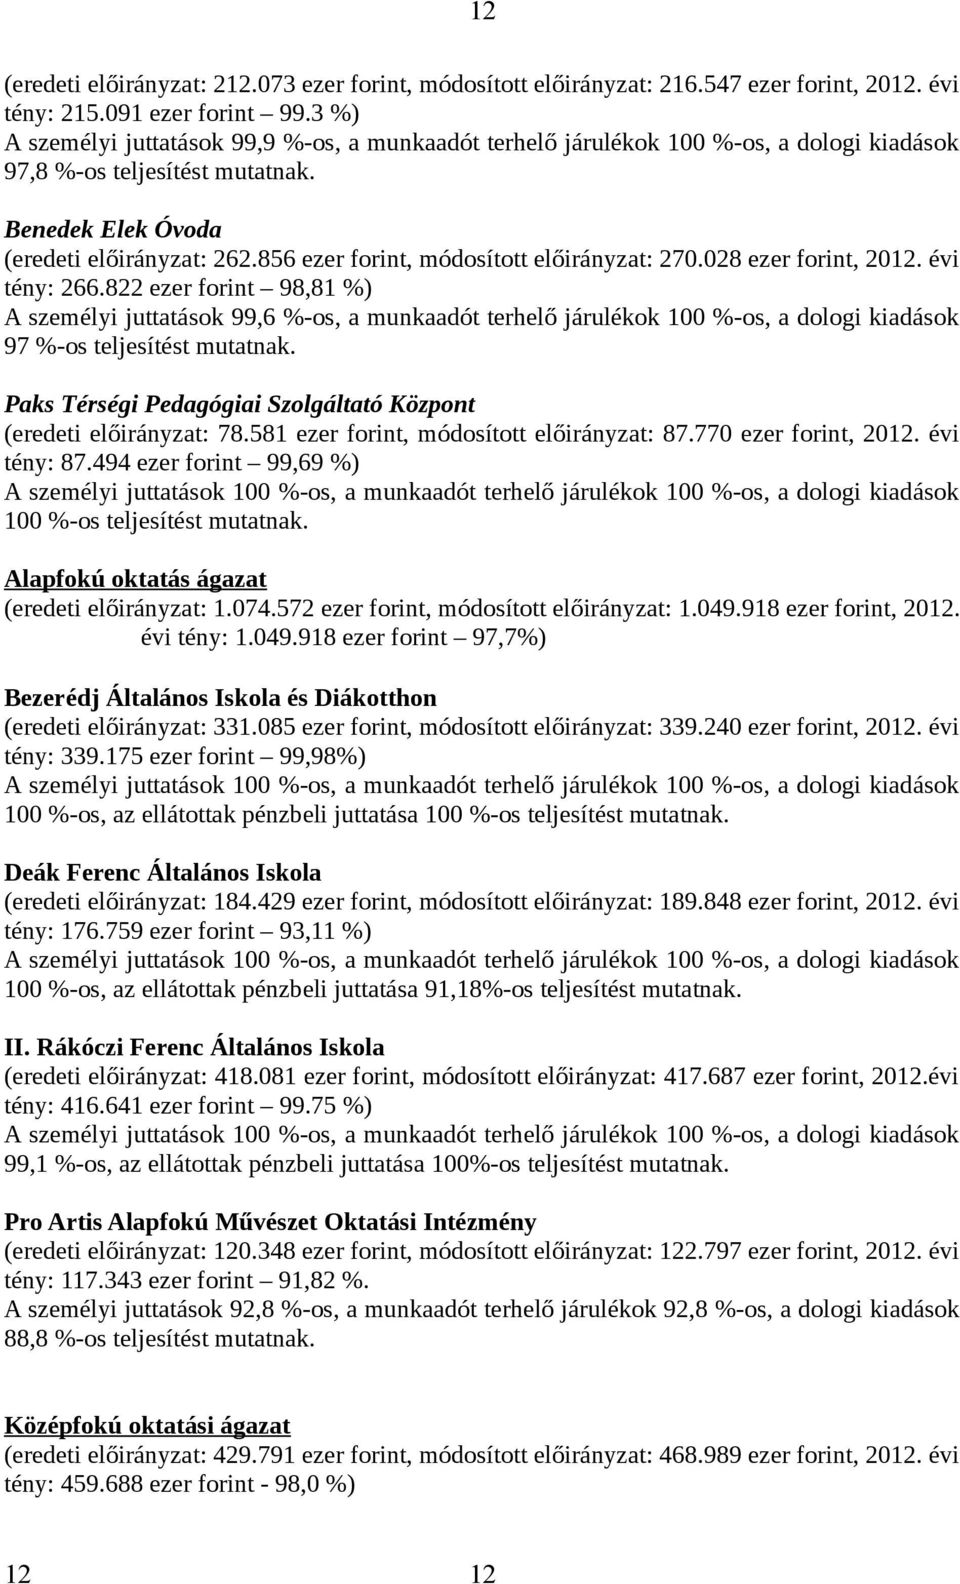 856 ezer forint, módosított előirányzat: 270.028 ezer forint, 2012. évi tény: 266.